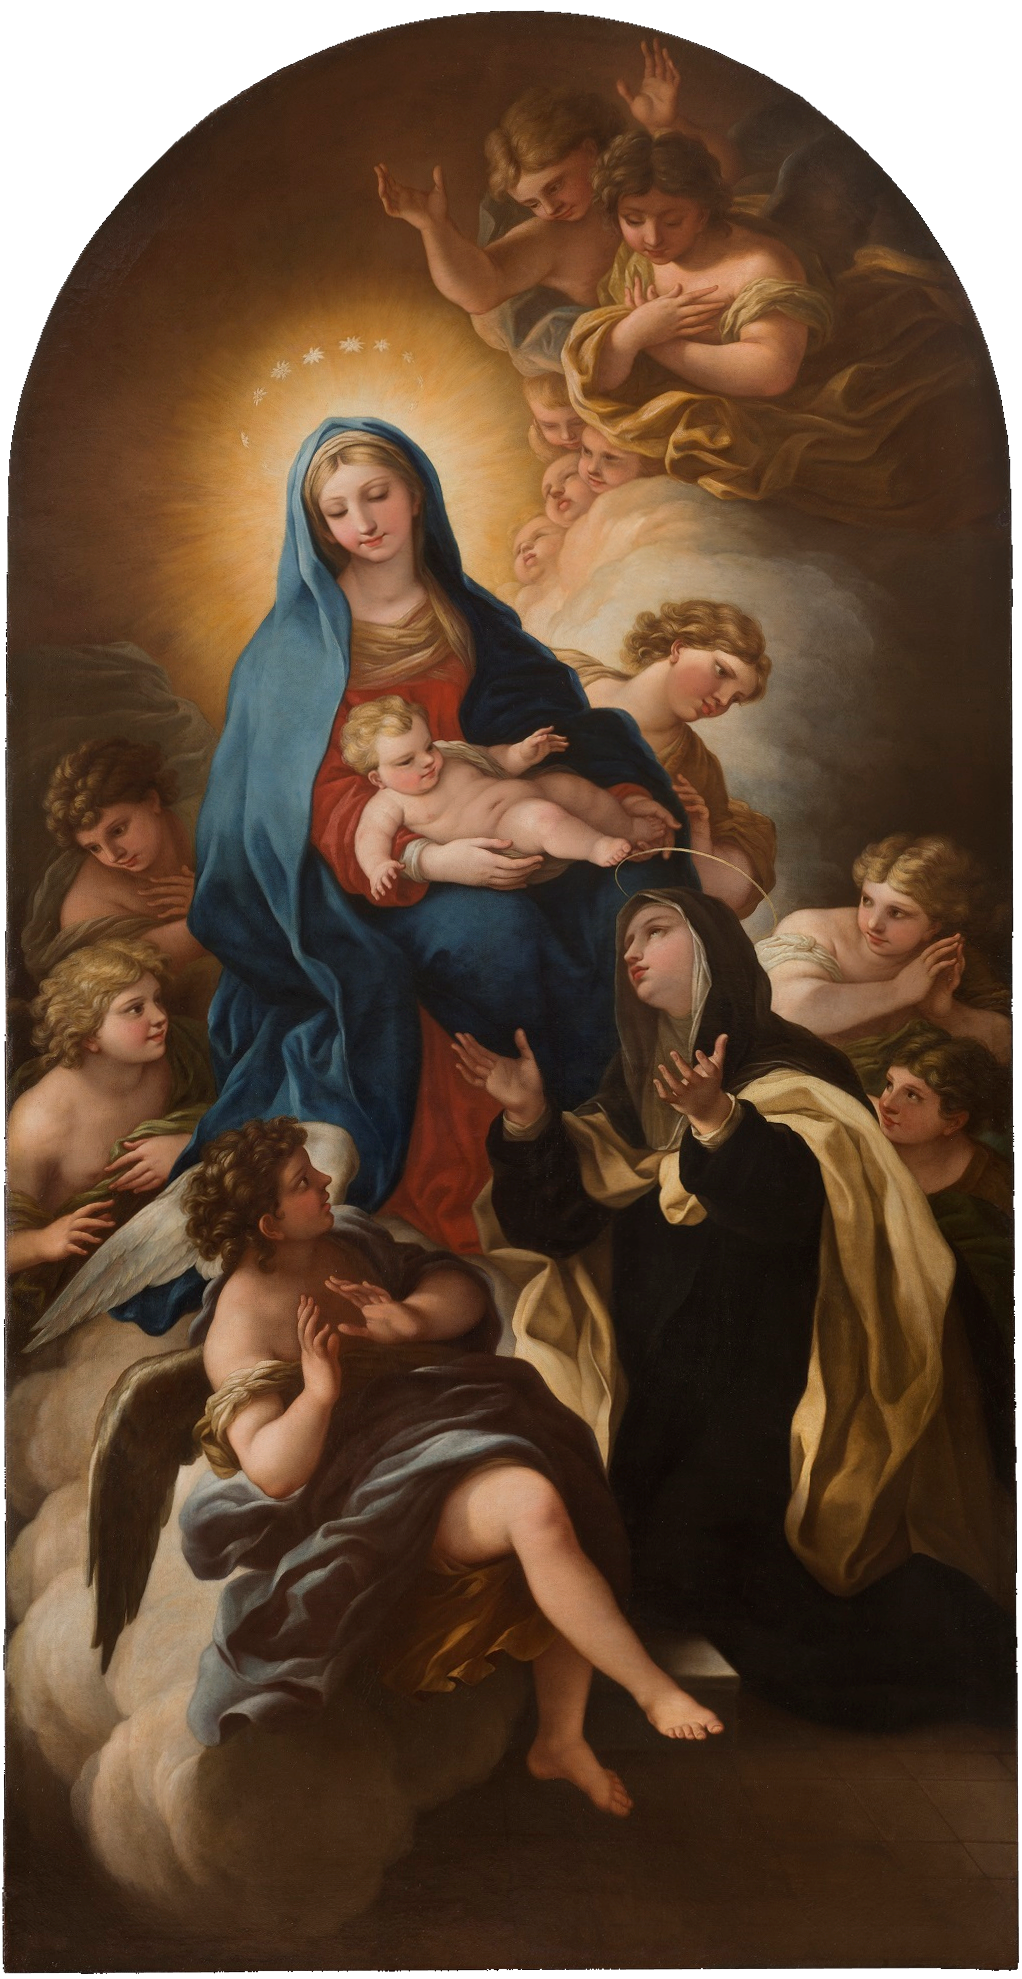 聖母瑪利亞將嬰兒耶穌獻給聖瑪麗亞·馬達萊娜·德·帕齊 by Violante Siries Cerroti - 1767 